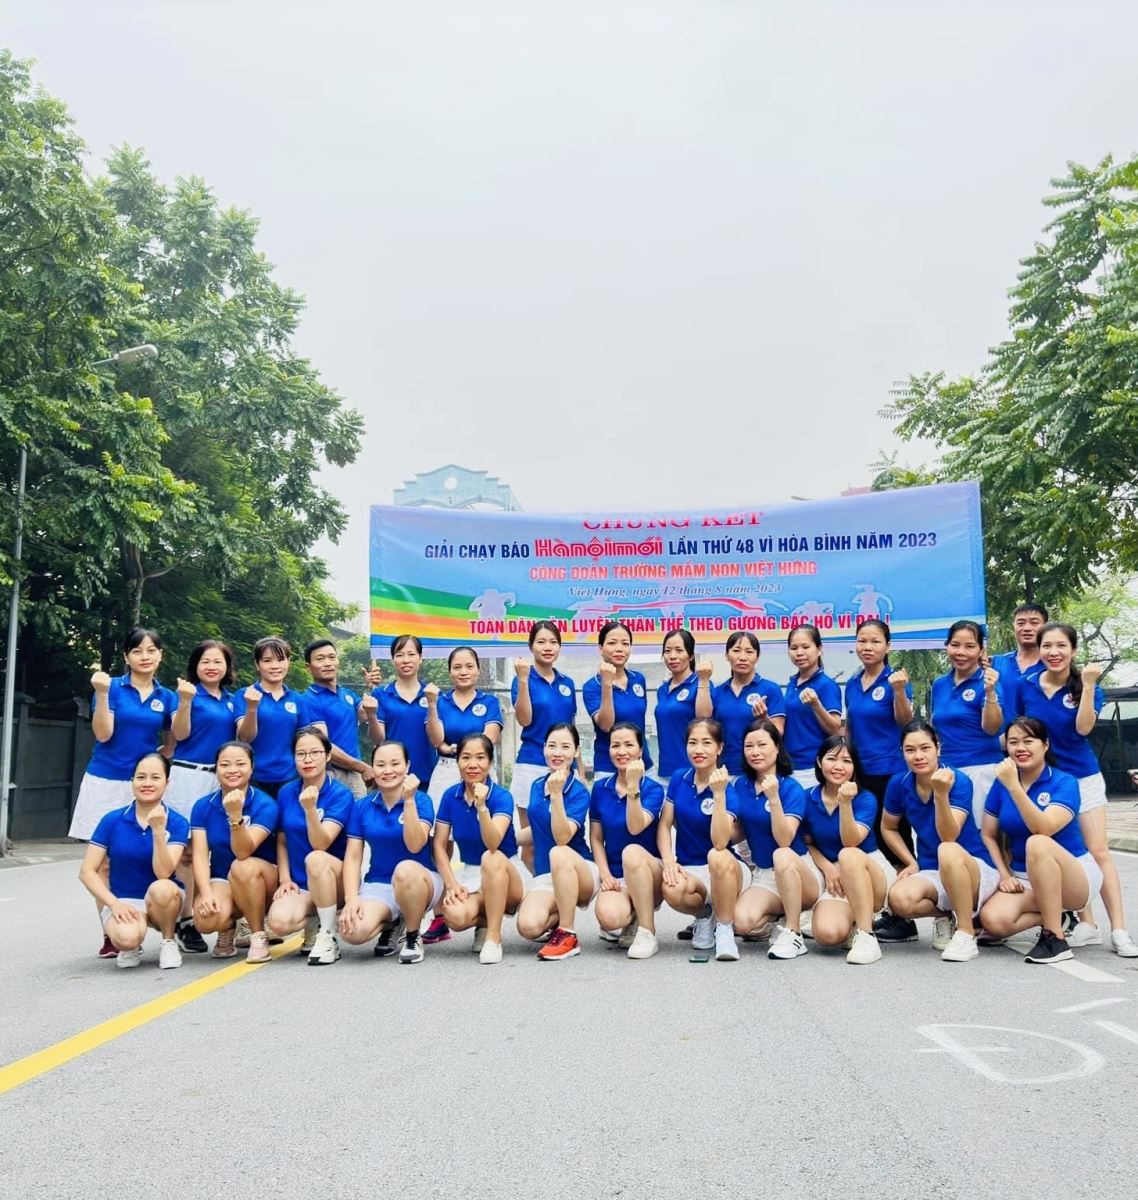 Trường Mầm non Việt Hưng tổ chức  Giải chạy Báo Hà Nội mới lần thứ 48 vì Hoà Bình  năm 2023 